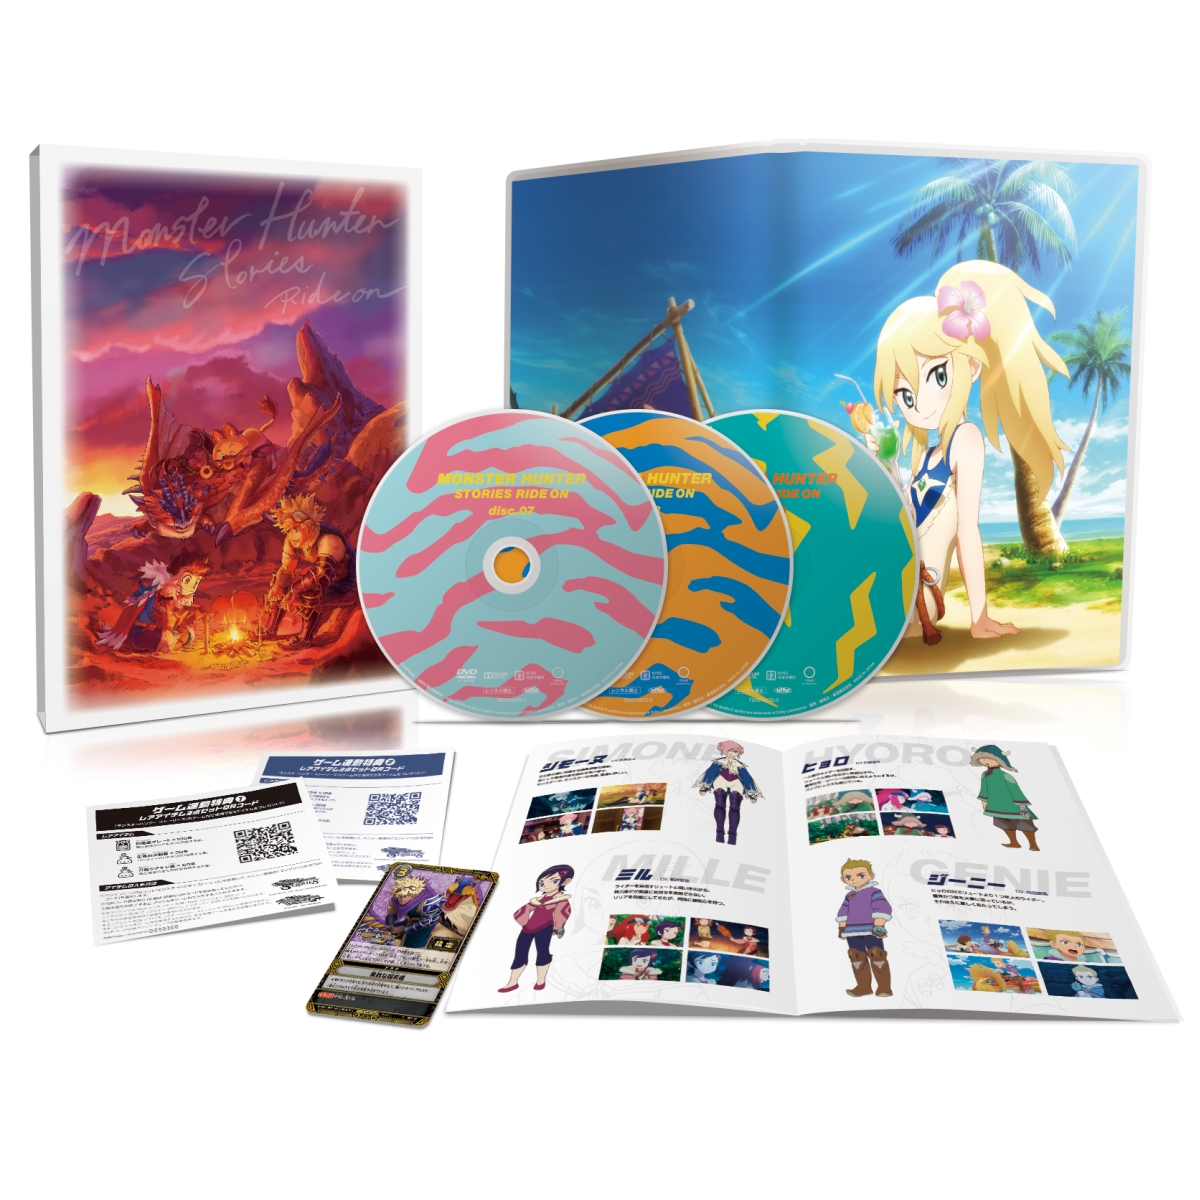 モンスターハンター ストーリーズ RIDE ON Blu-ray BOX Vol.3【Blu-ray】 [ 田村睦心 ]画像